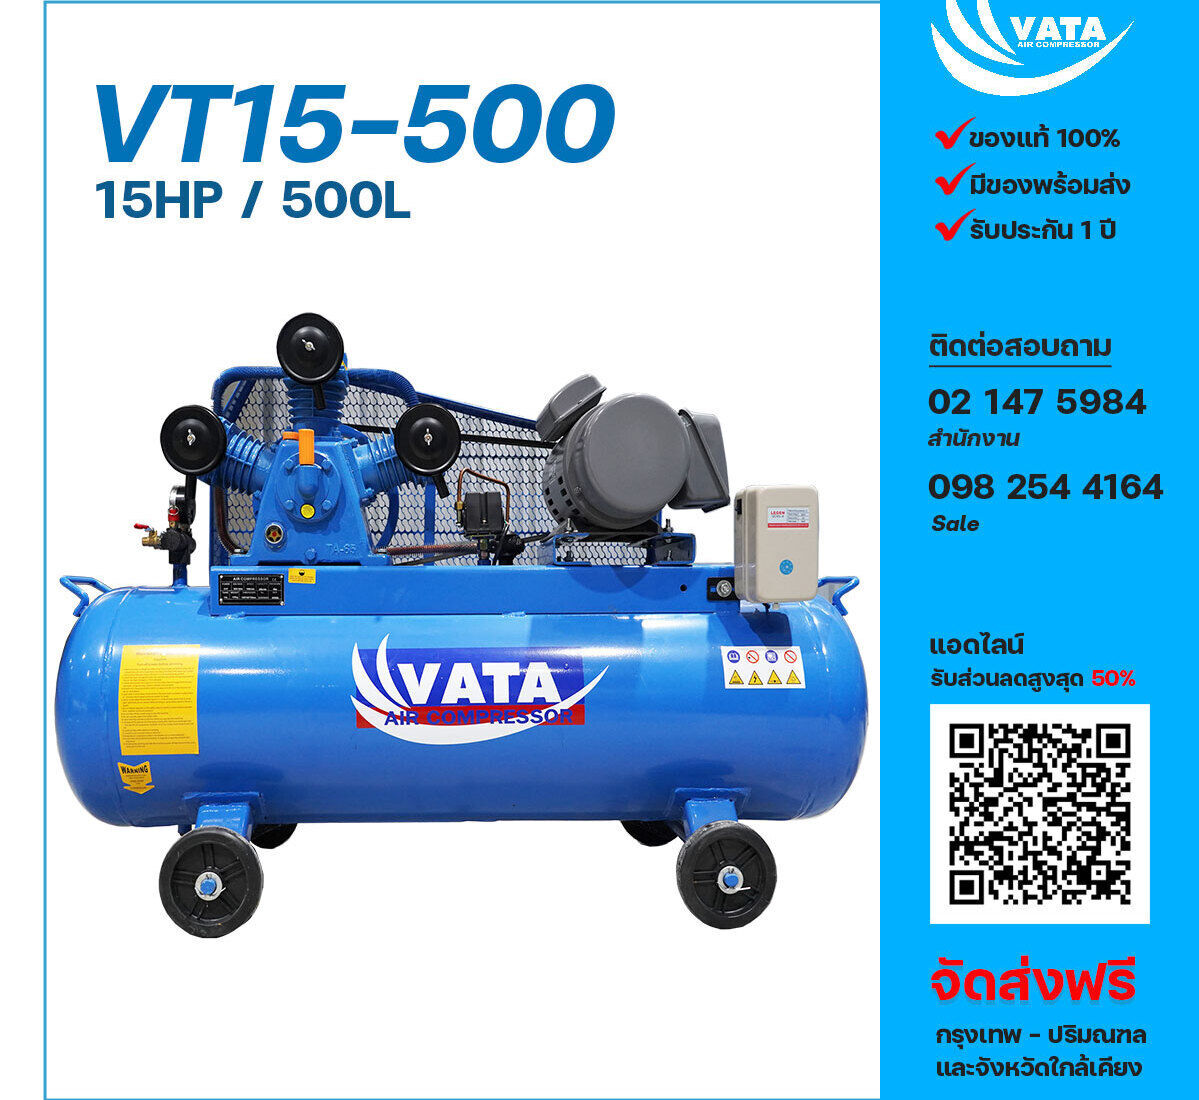 ปั๊มลมวาตะ VATA VT15-500 380V ปั๊มลมลูกสูบ ขนาด 3 สูบ 15 แรงม้า 500 ลิตร VATA พร้อมมอเตอร์ ไฟ 380V ส่งฟรี กรุงเทพฯ-ปริมณฑล รับประกัน 1 ปี